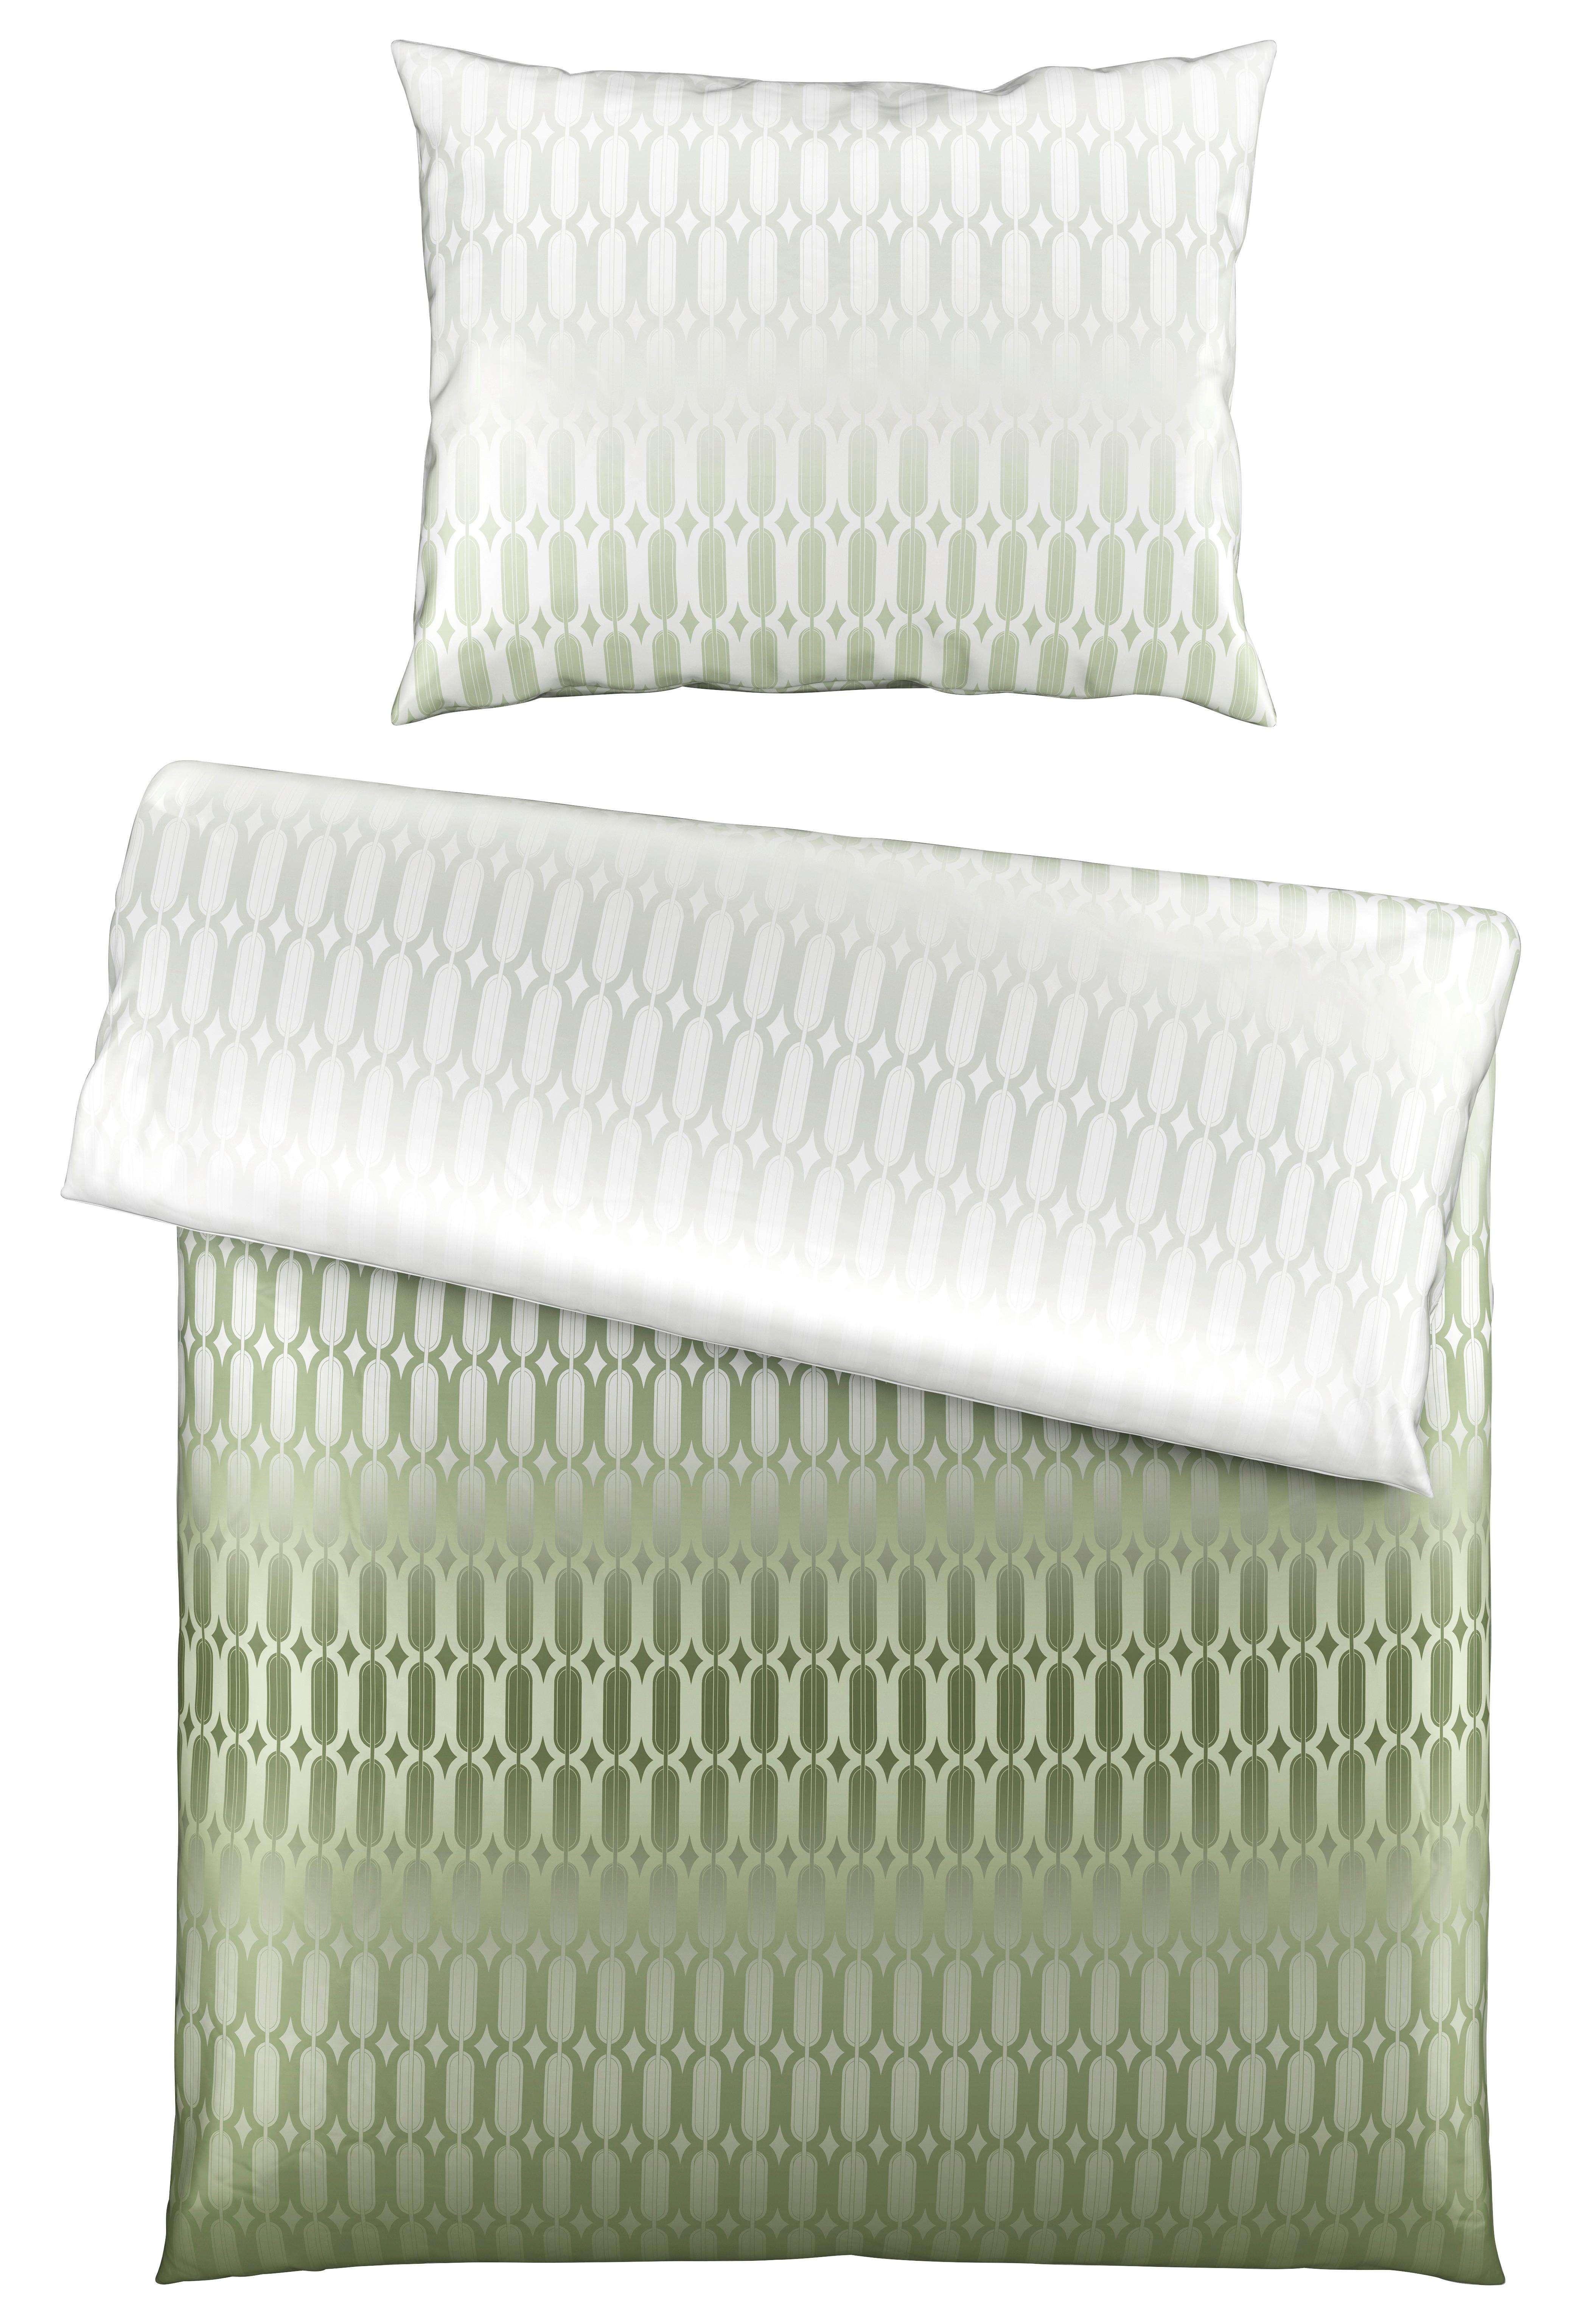 Posteljnina Picol - zelena/olivno zelena , Moderno, tekstil (140/200cm) - Premium Living